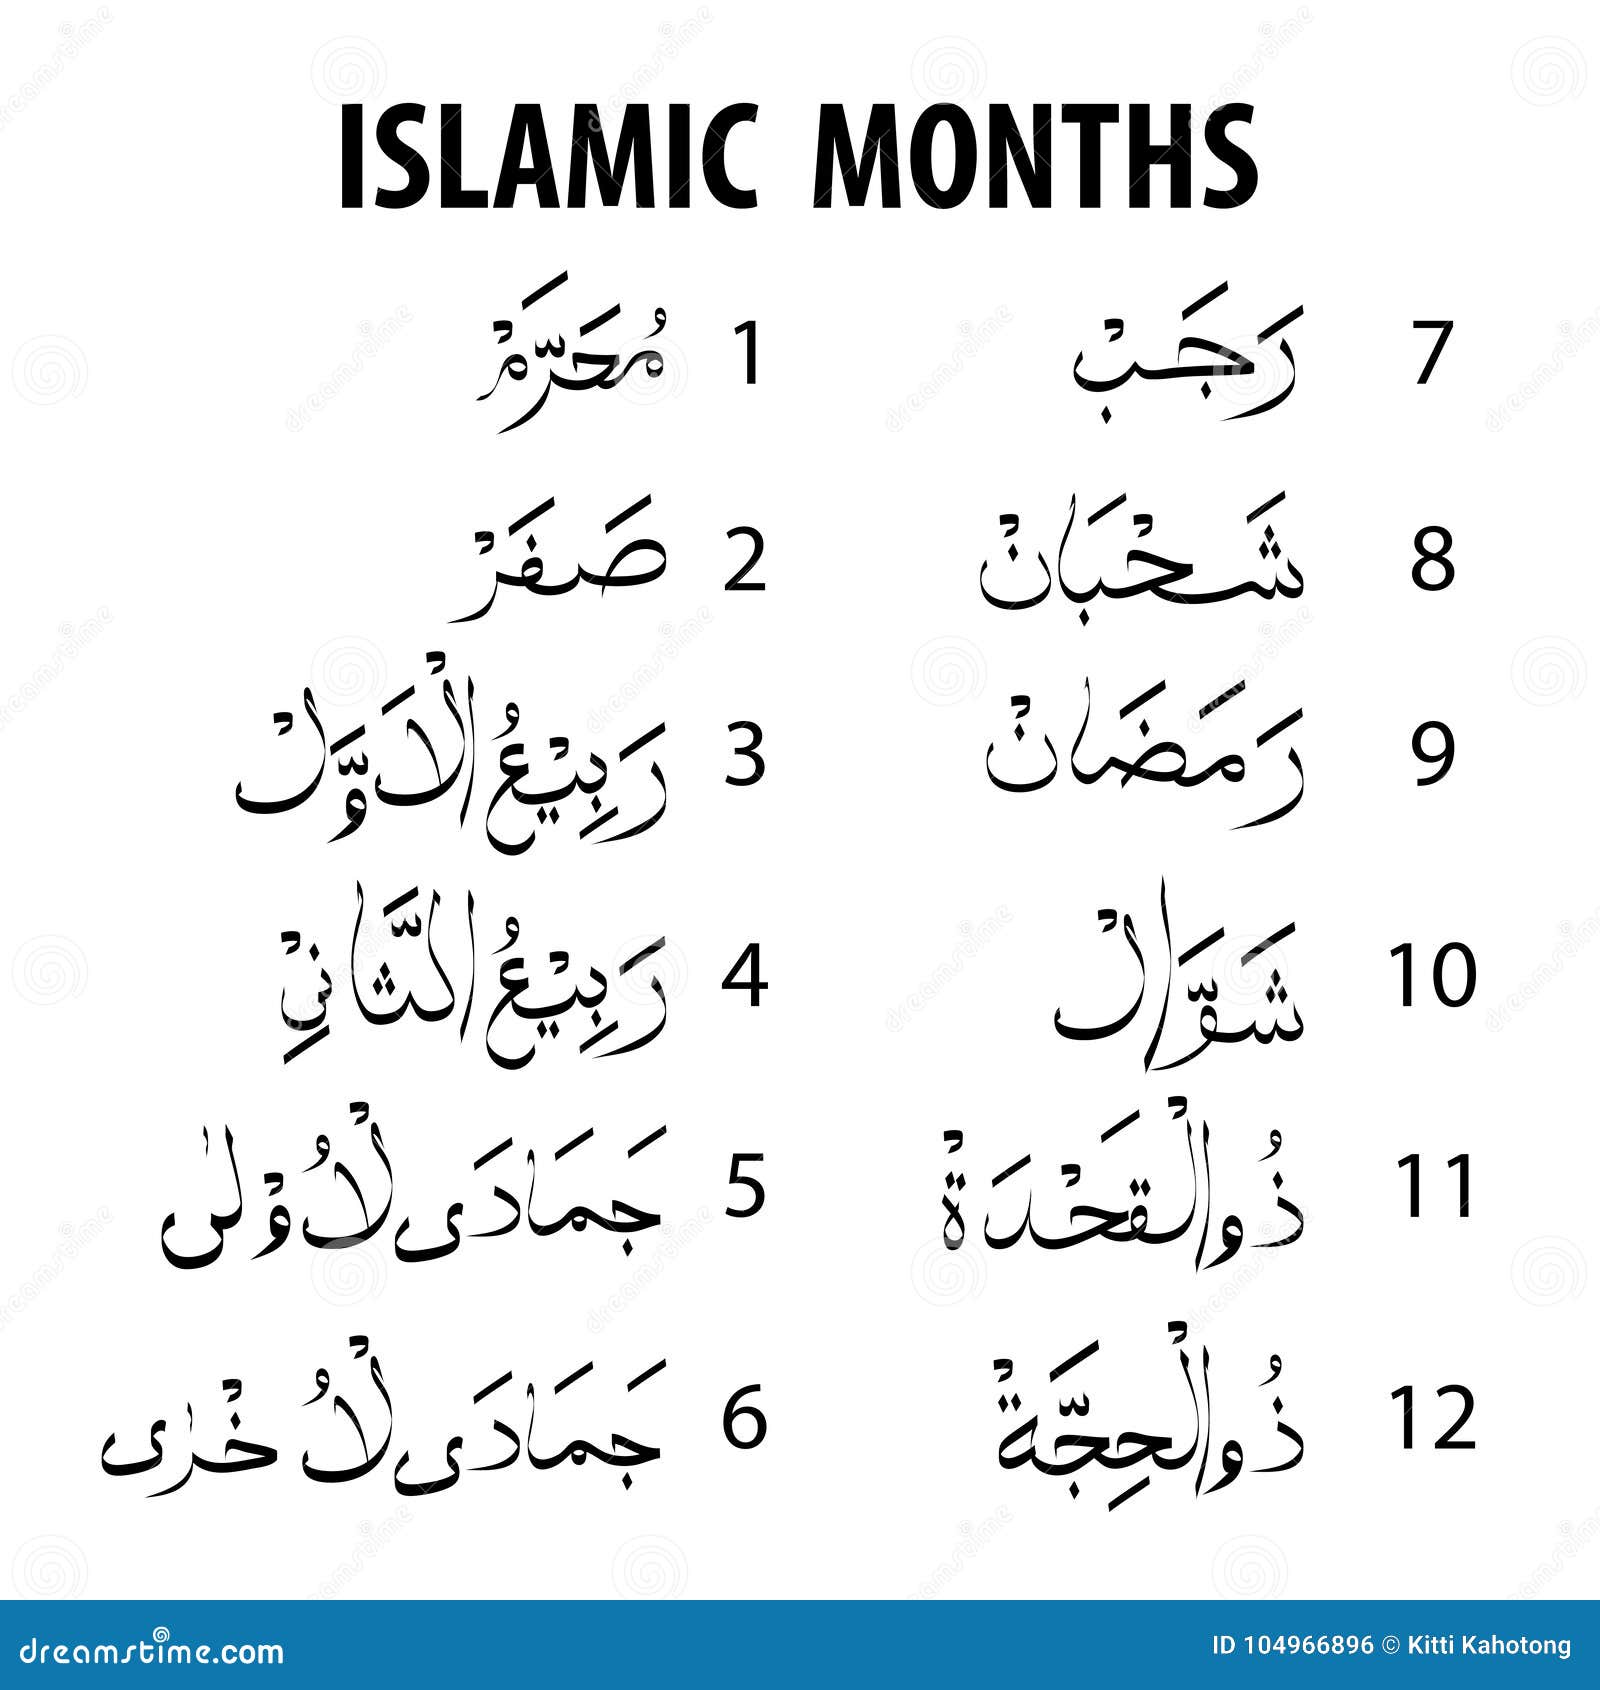 Дни недели на арабском. Месяца на арабском. Арабские месяцы на арабском. Месяцы мусульманского календаря на арабском. Название мусульманских месяцев.